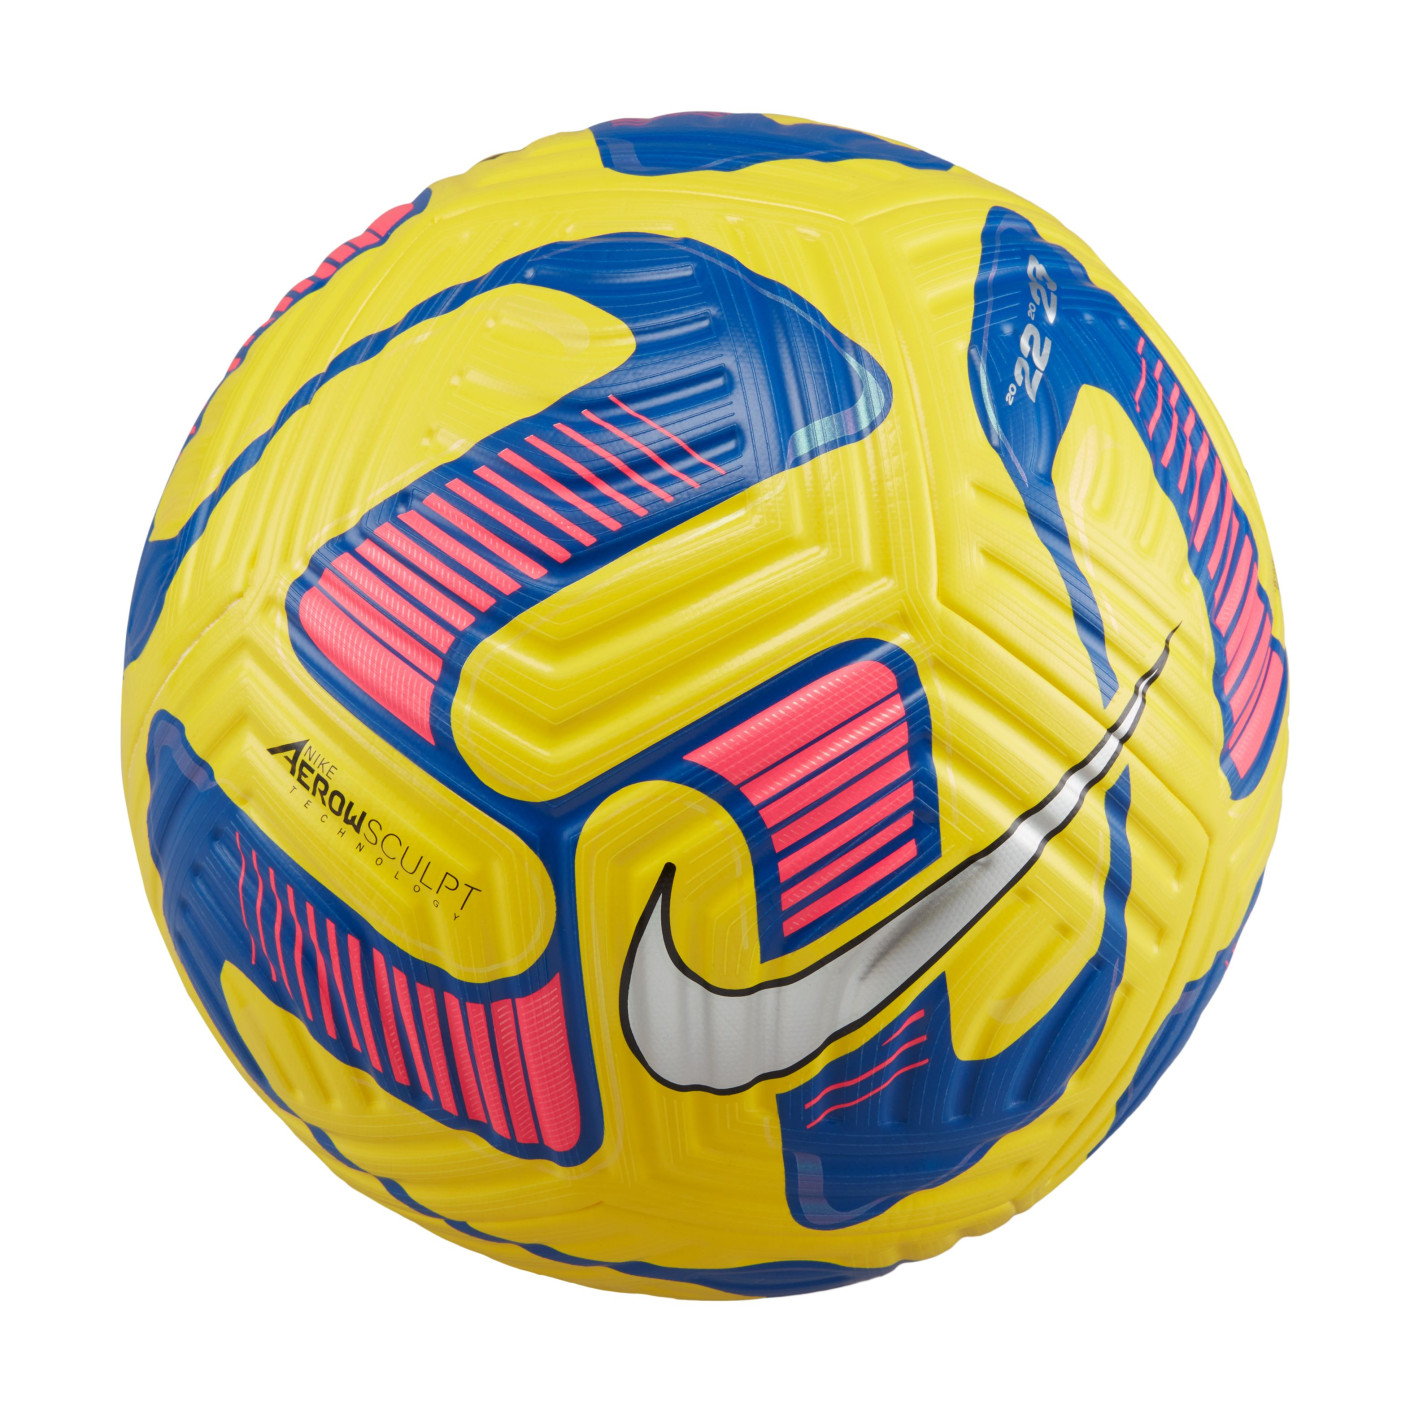 Nike Flight Ballon de Football Jaune Bleu Argent